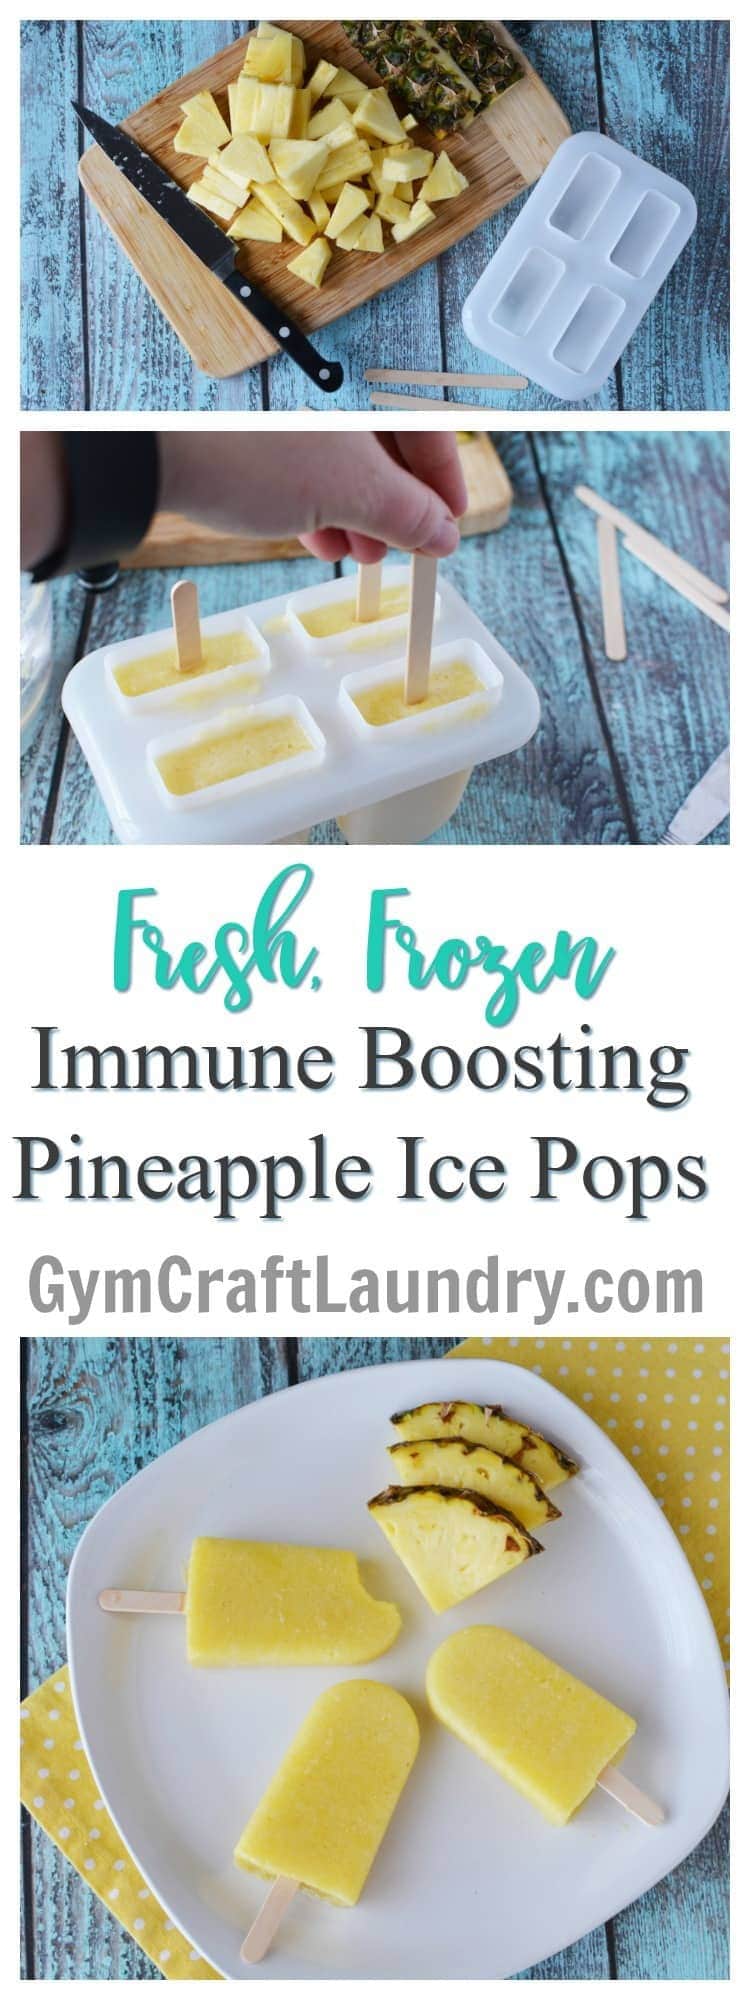 Fresh Frozen Pineapple Popsicle Immune Boosting Snacks